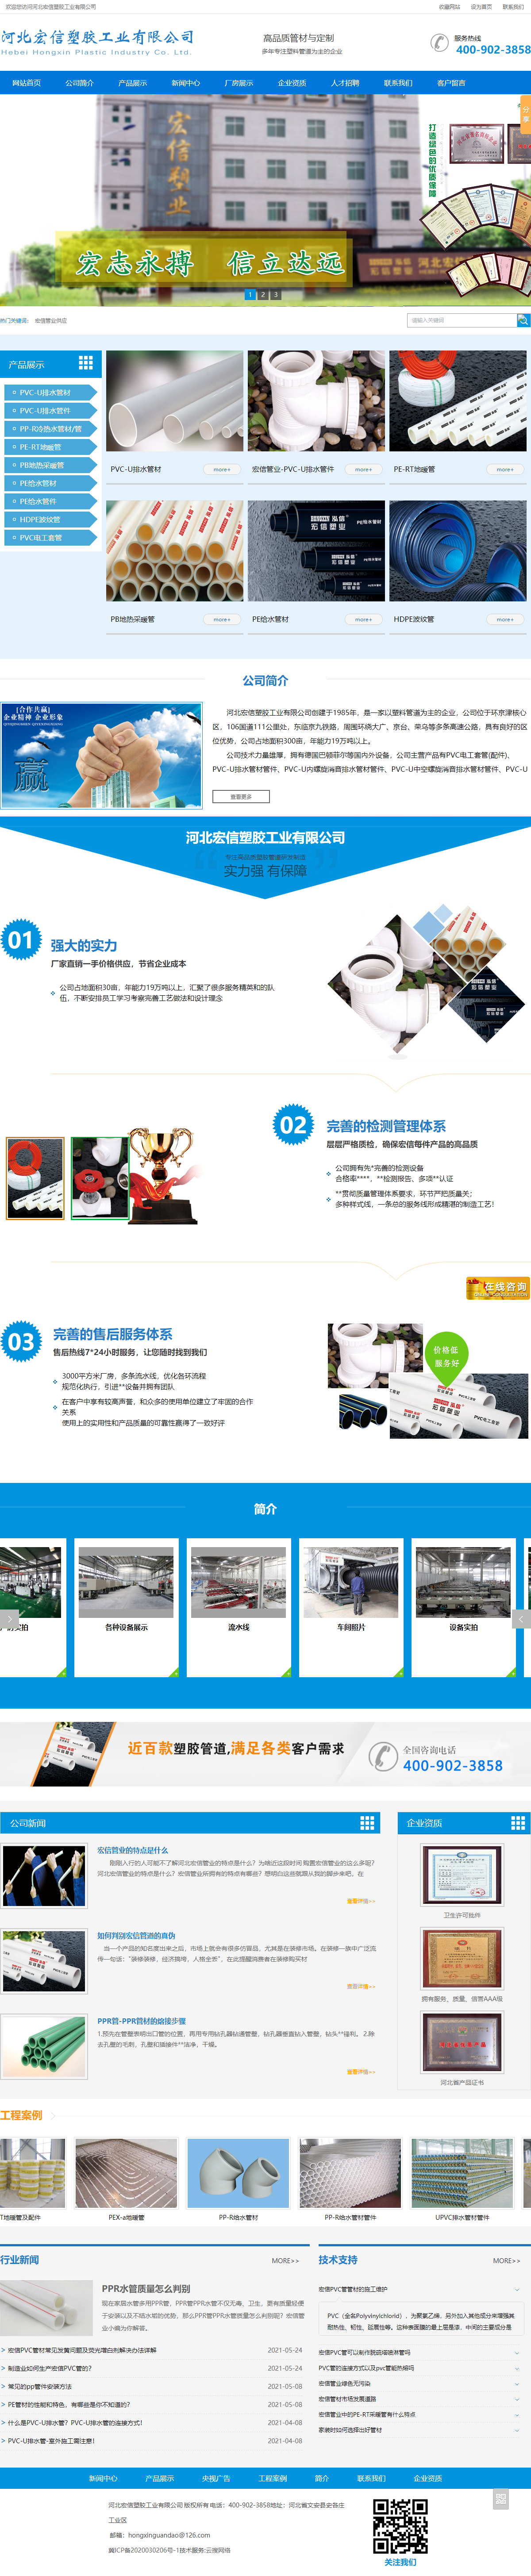 河北宏信塑胶工业有限公司网站案例